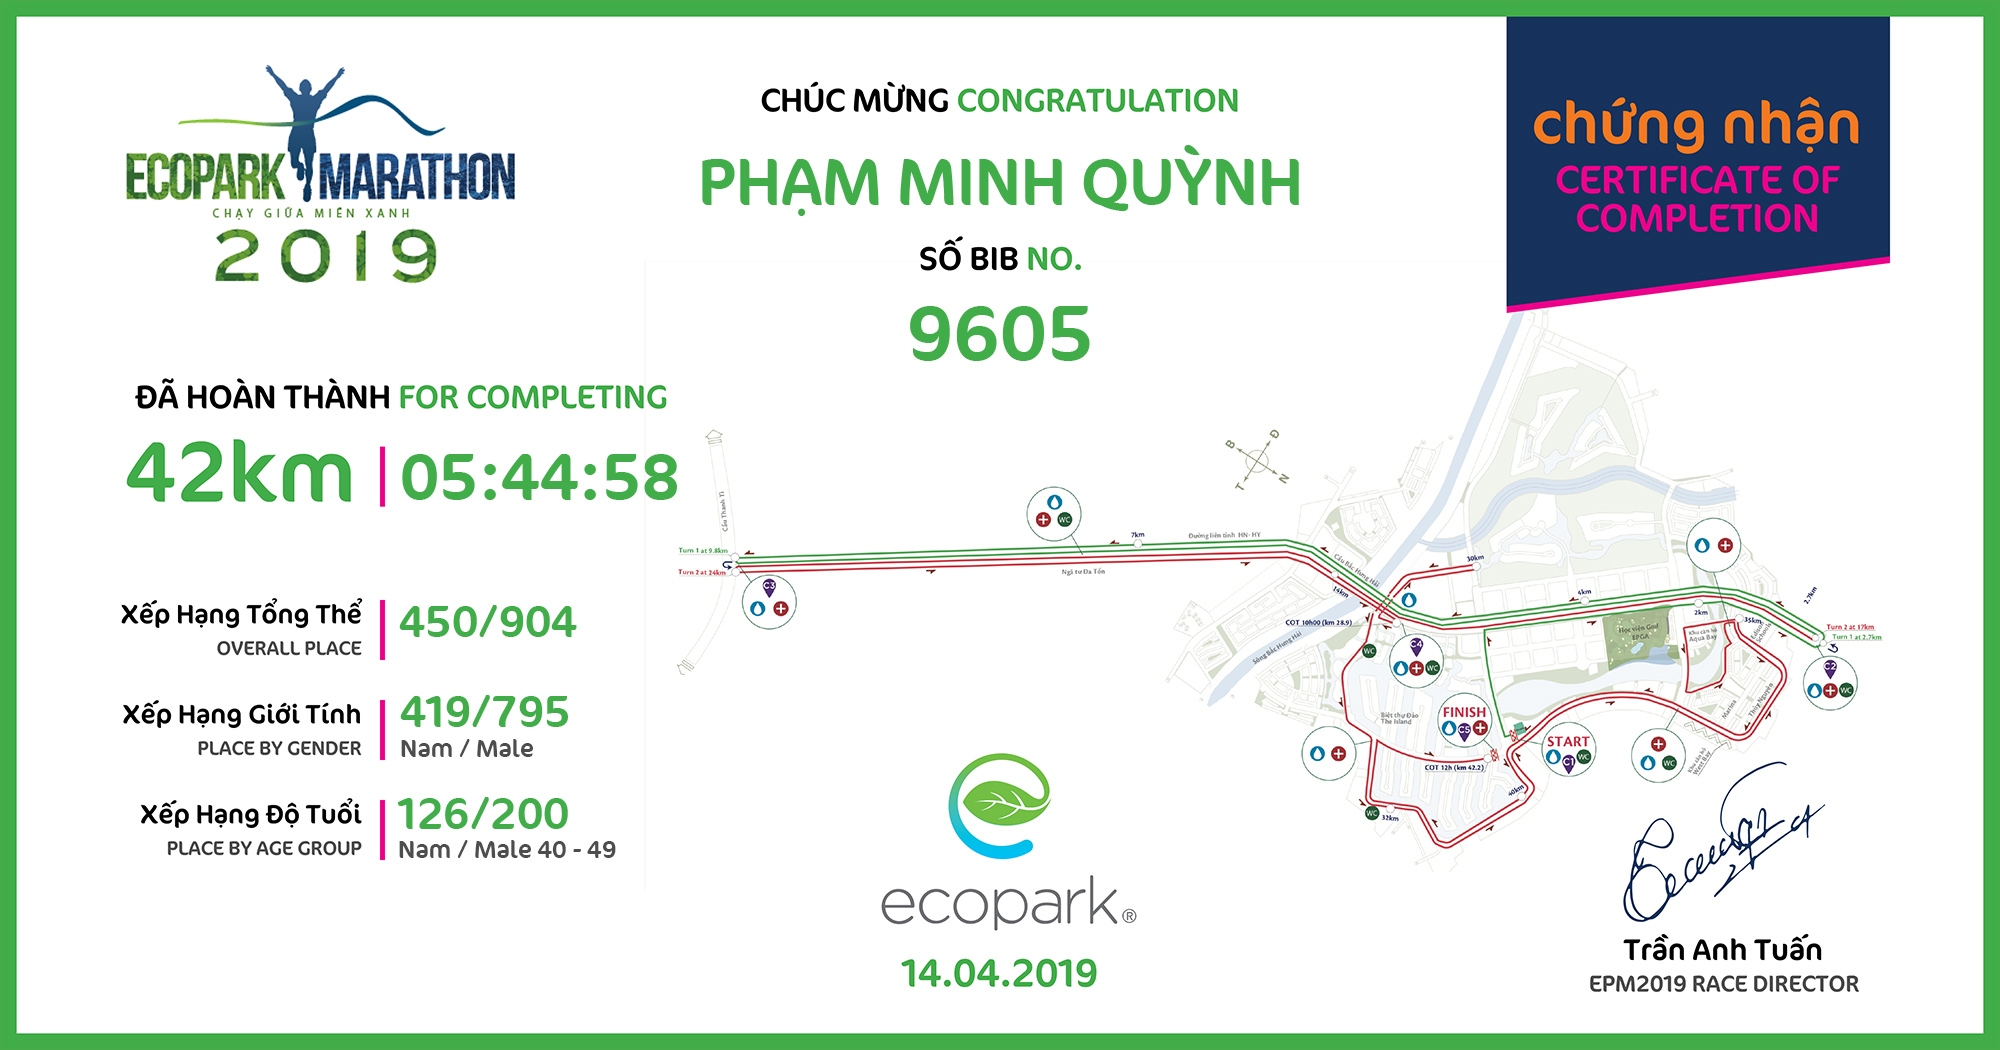 9605 - Phạm Minh Quỳnh